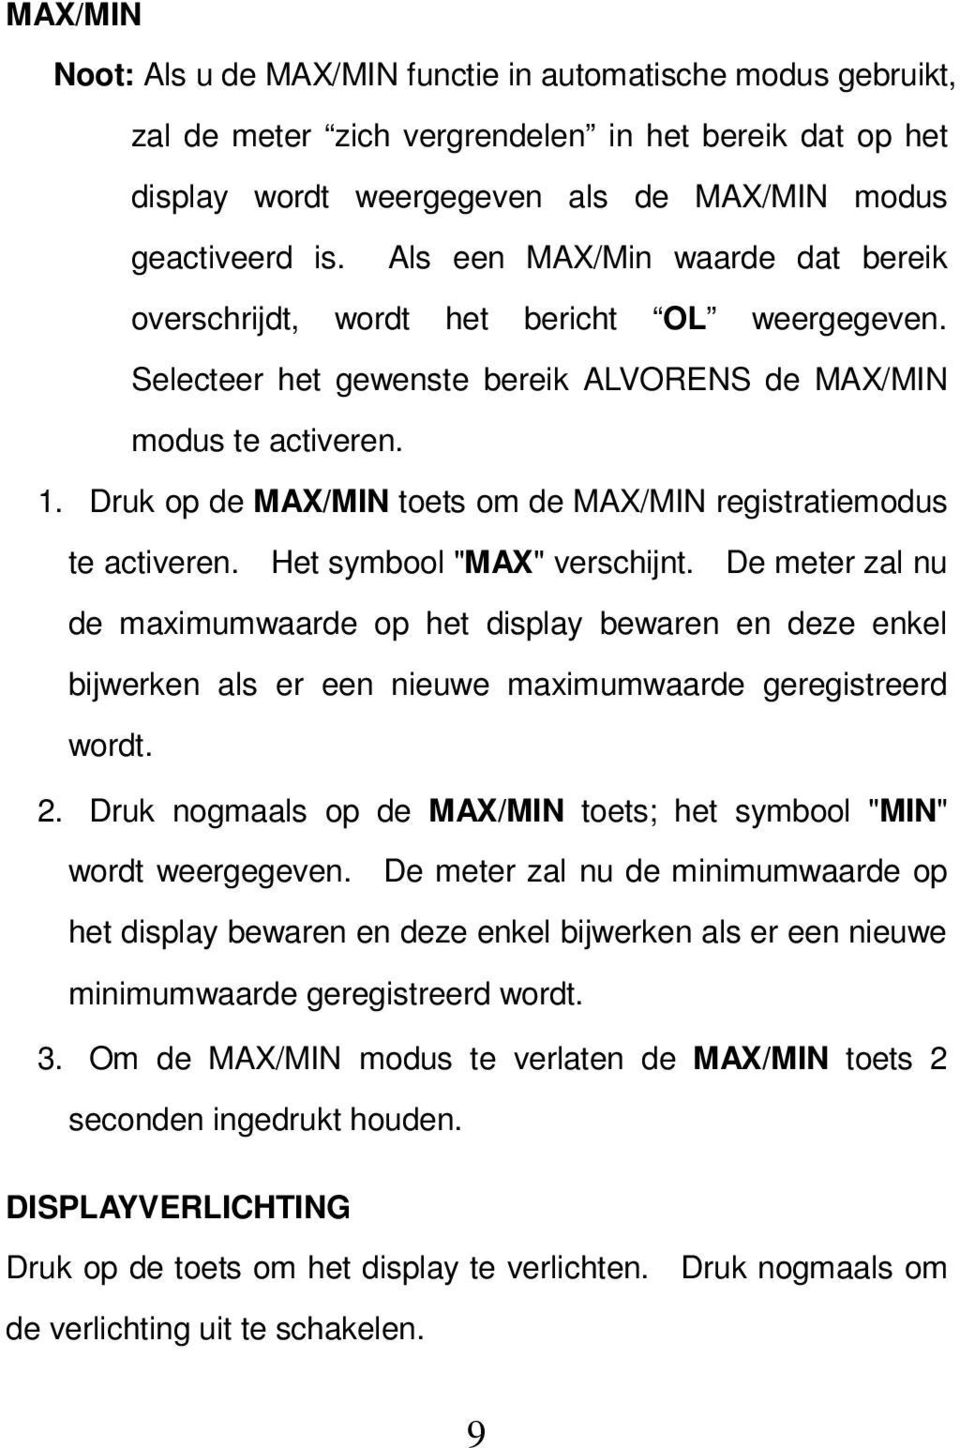 Druk op de MAX/MIN toets om de MAX/MIN registratiemodus te activeren. Het symbool "MAX" verschijnt.